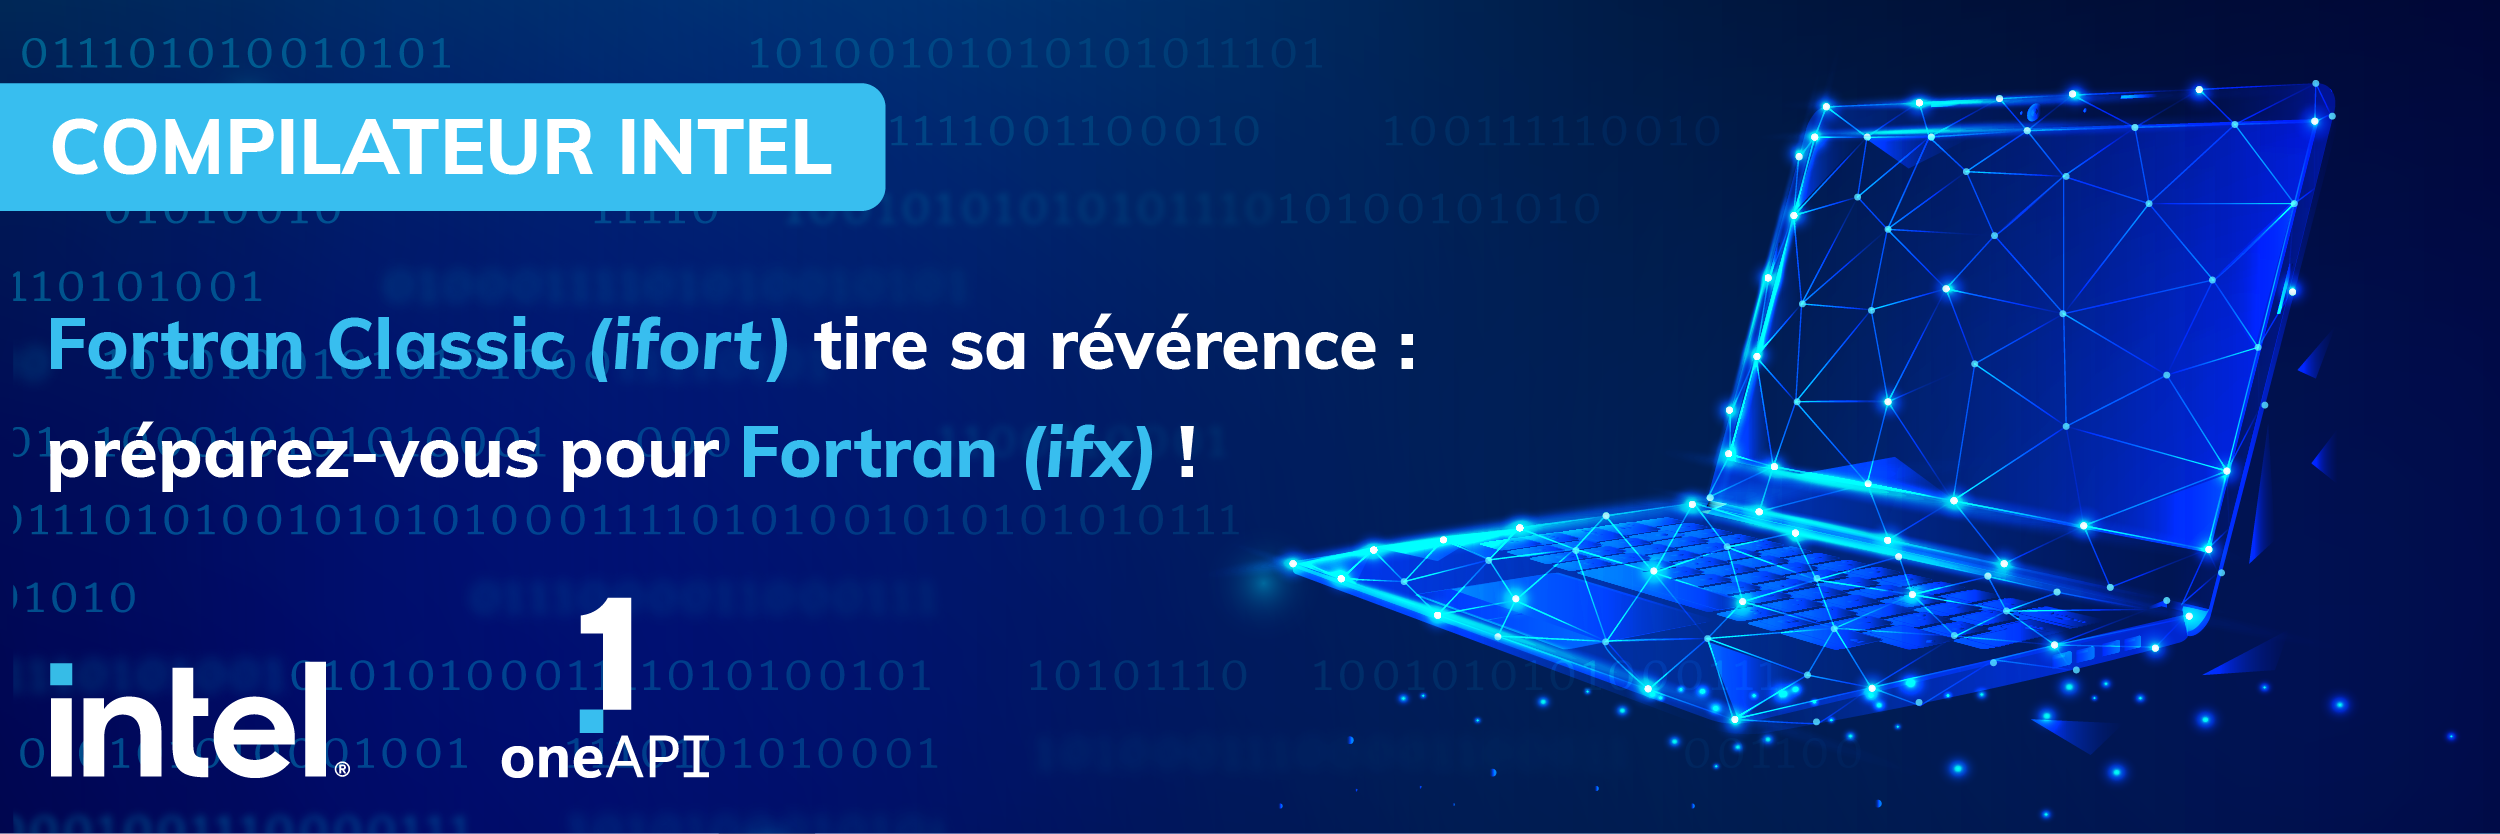 Fin du compilateur Fortran Classic (ifort) : préparez-vous pour (ifx) !